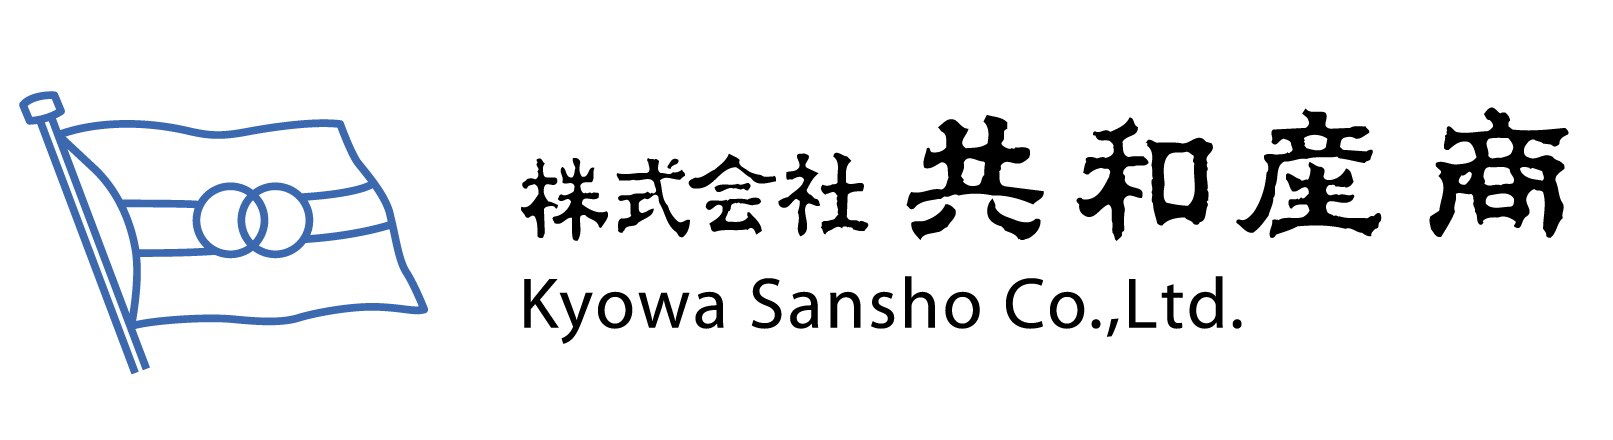 Kyowa logo.png